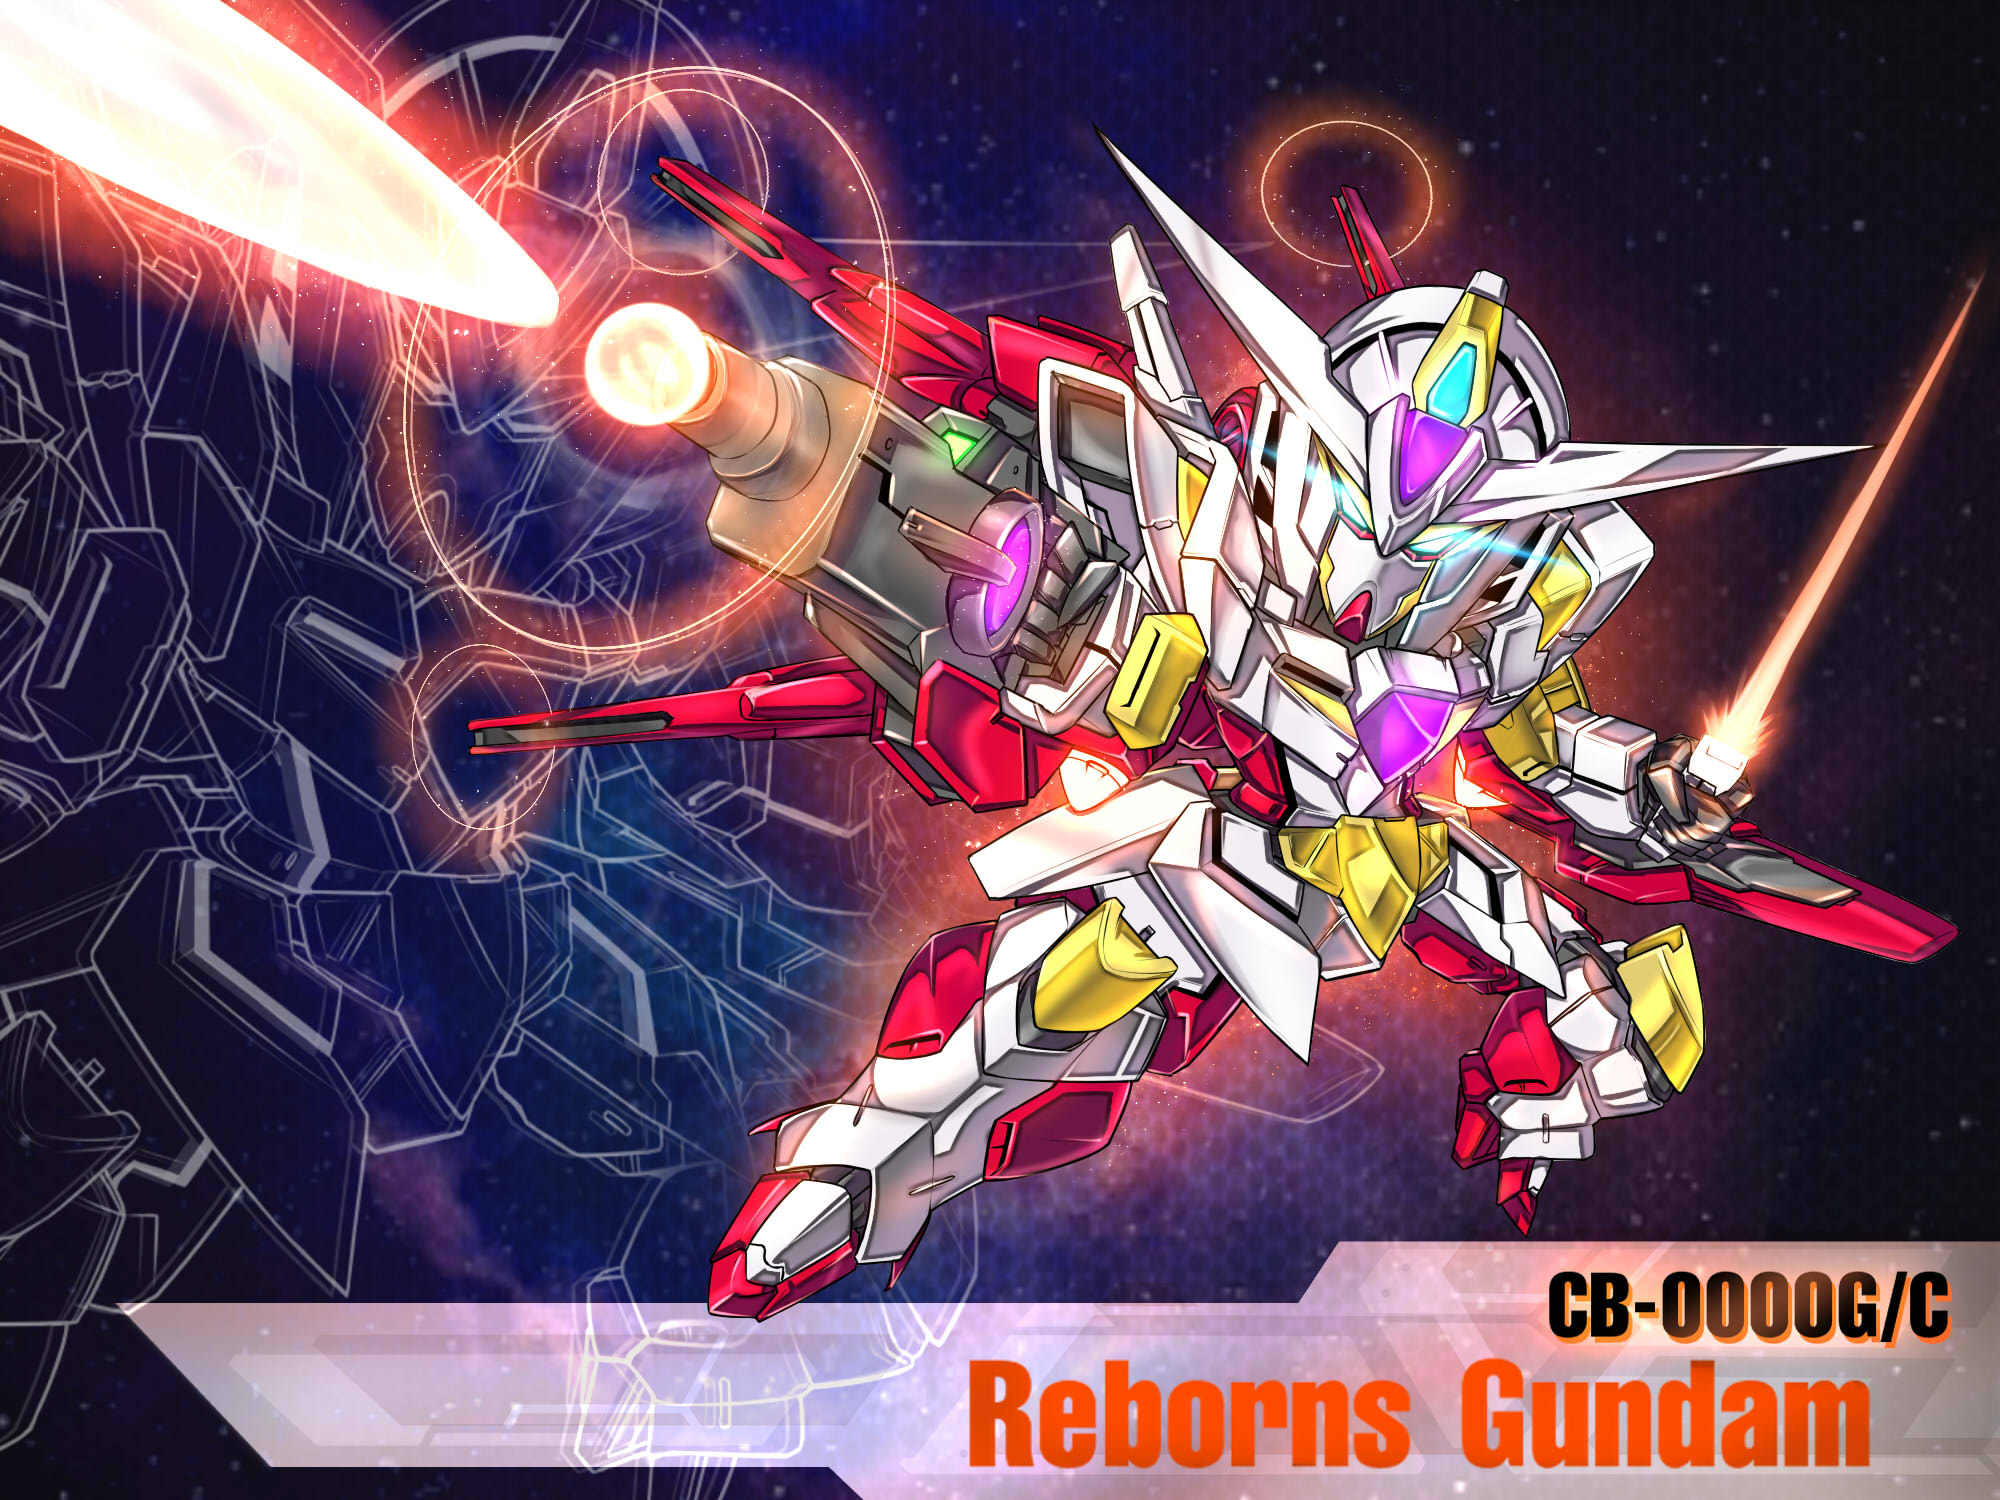 Anime 2000x1500 anime mechs Gundam Super Robot Taisen Mobile Suit Gundam 00 Reborns Gundam artwork digital art fan art